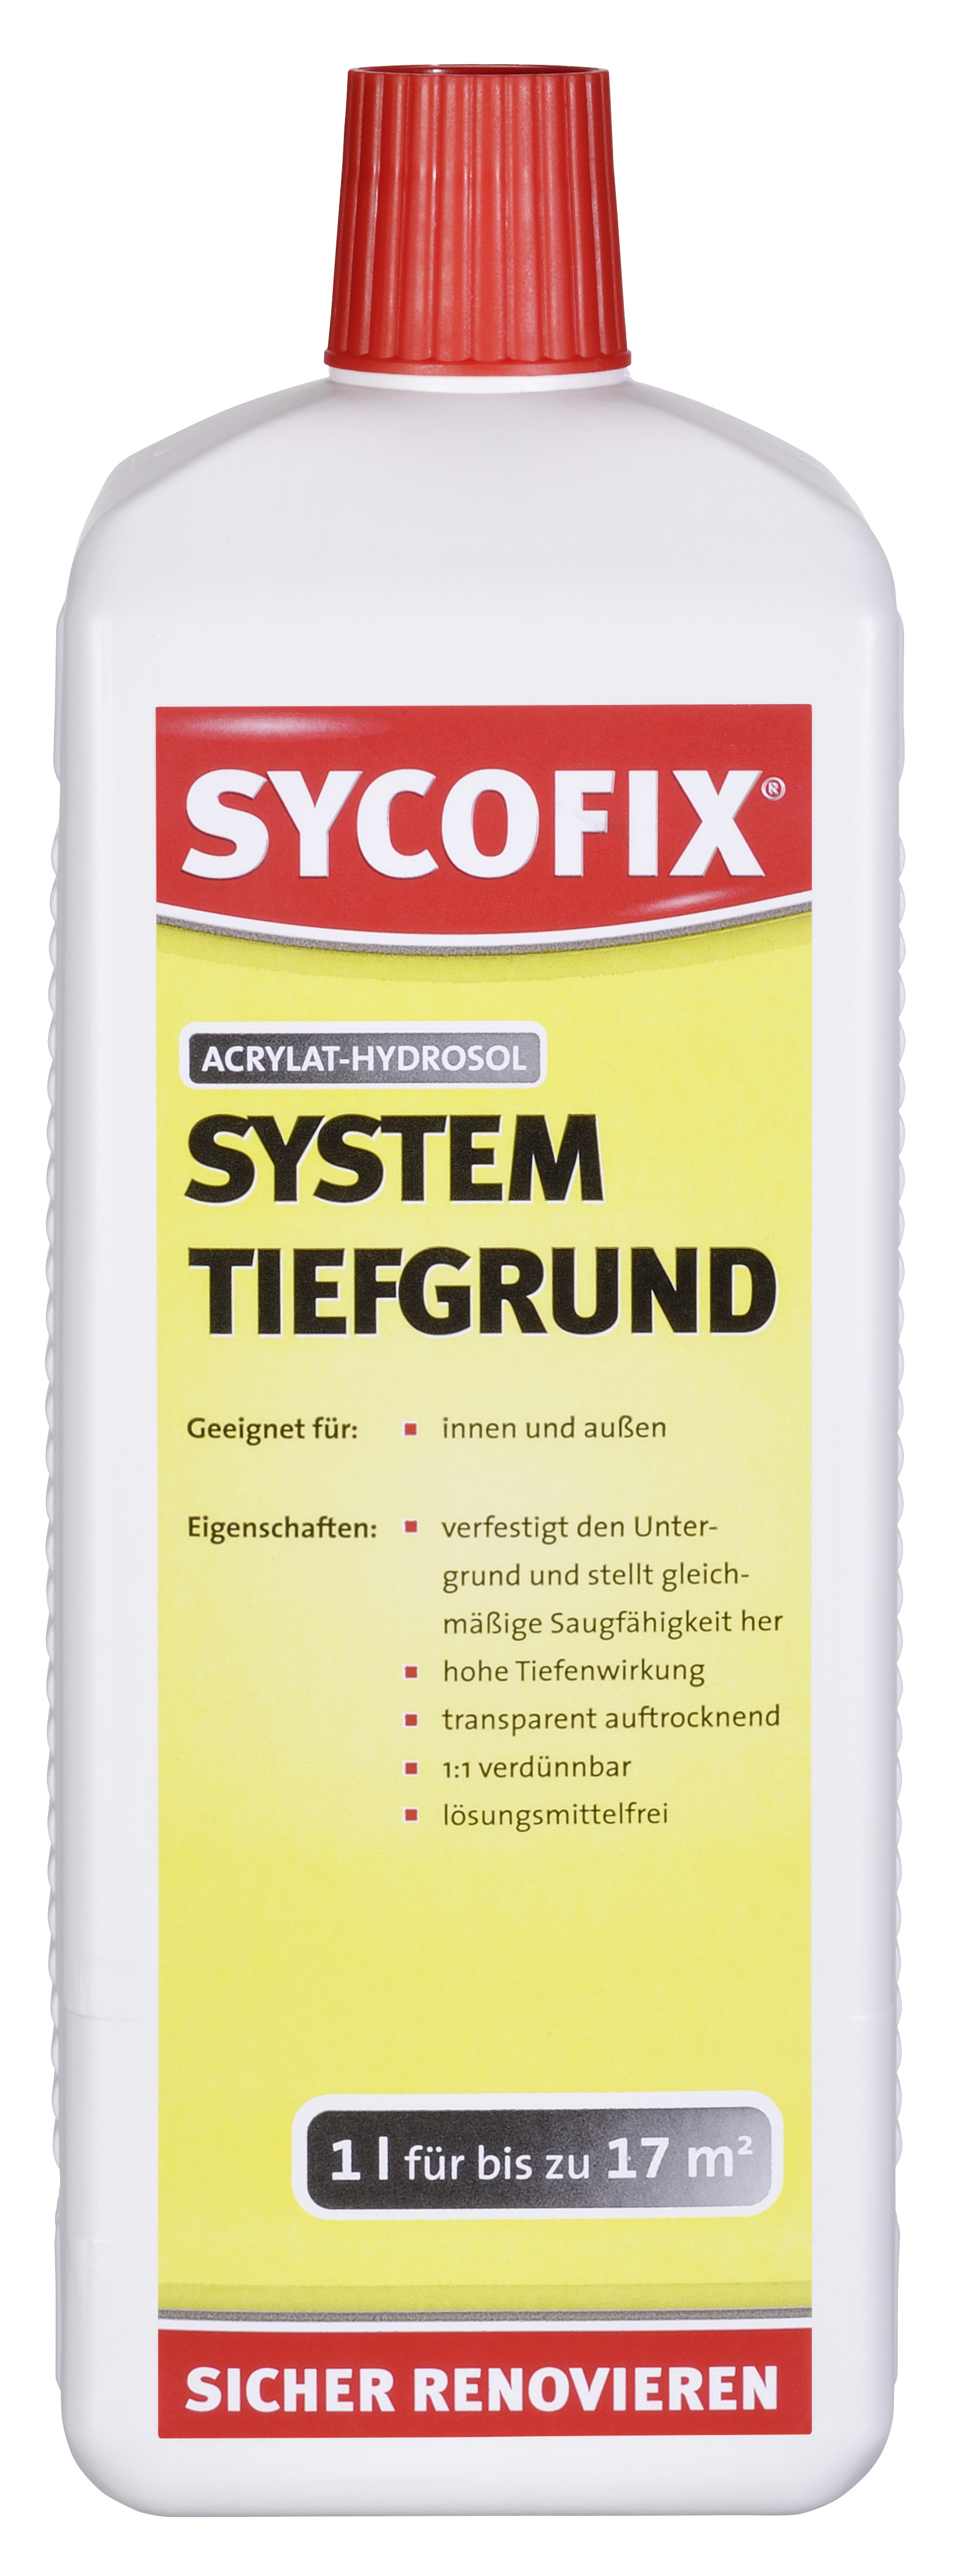 SYCOFIX ® System Tiefgrund LF 1 l